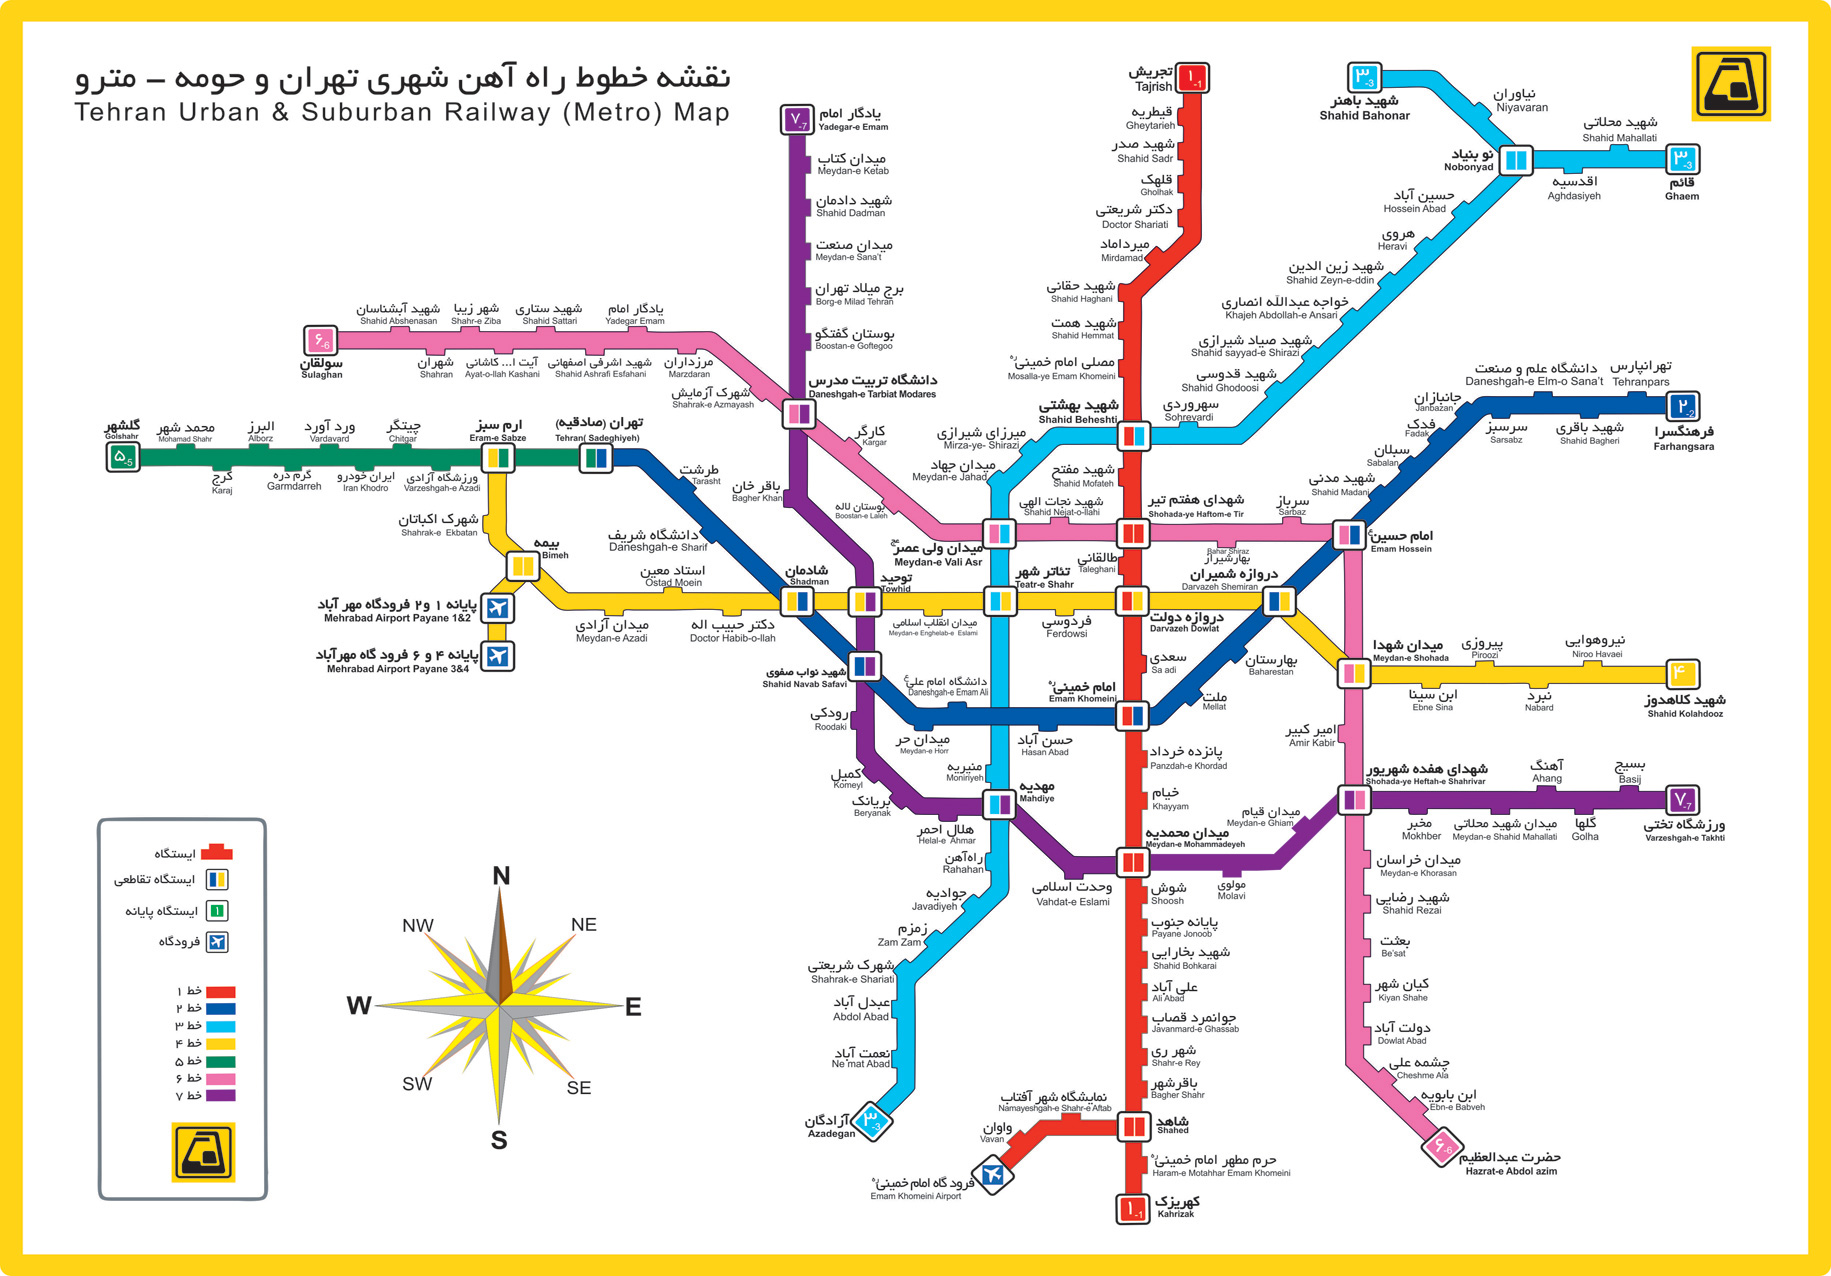 دانلود جدیدترین عکس مترو تهران
